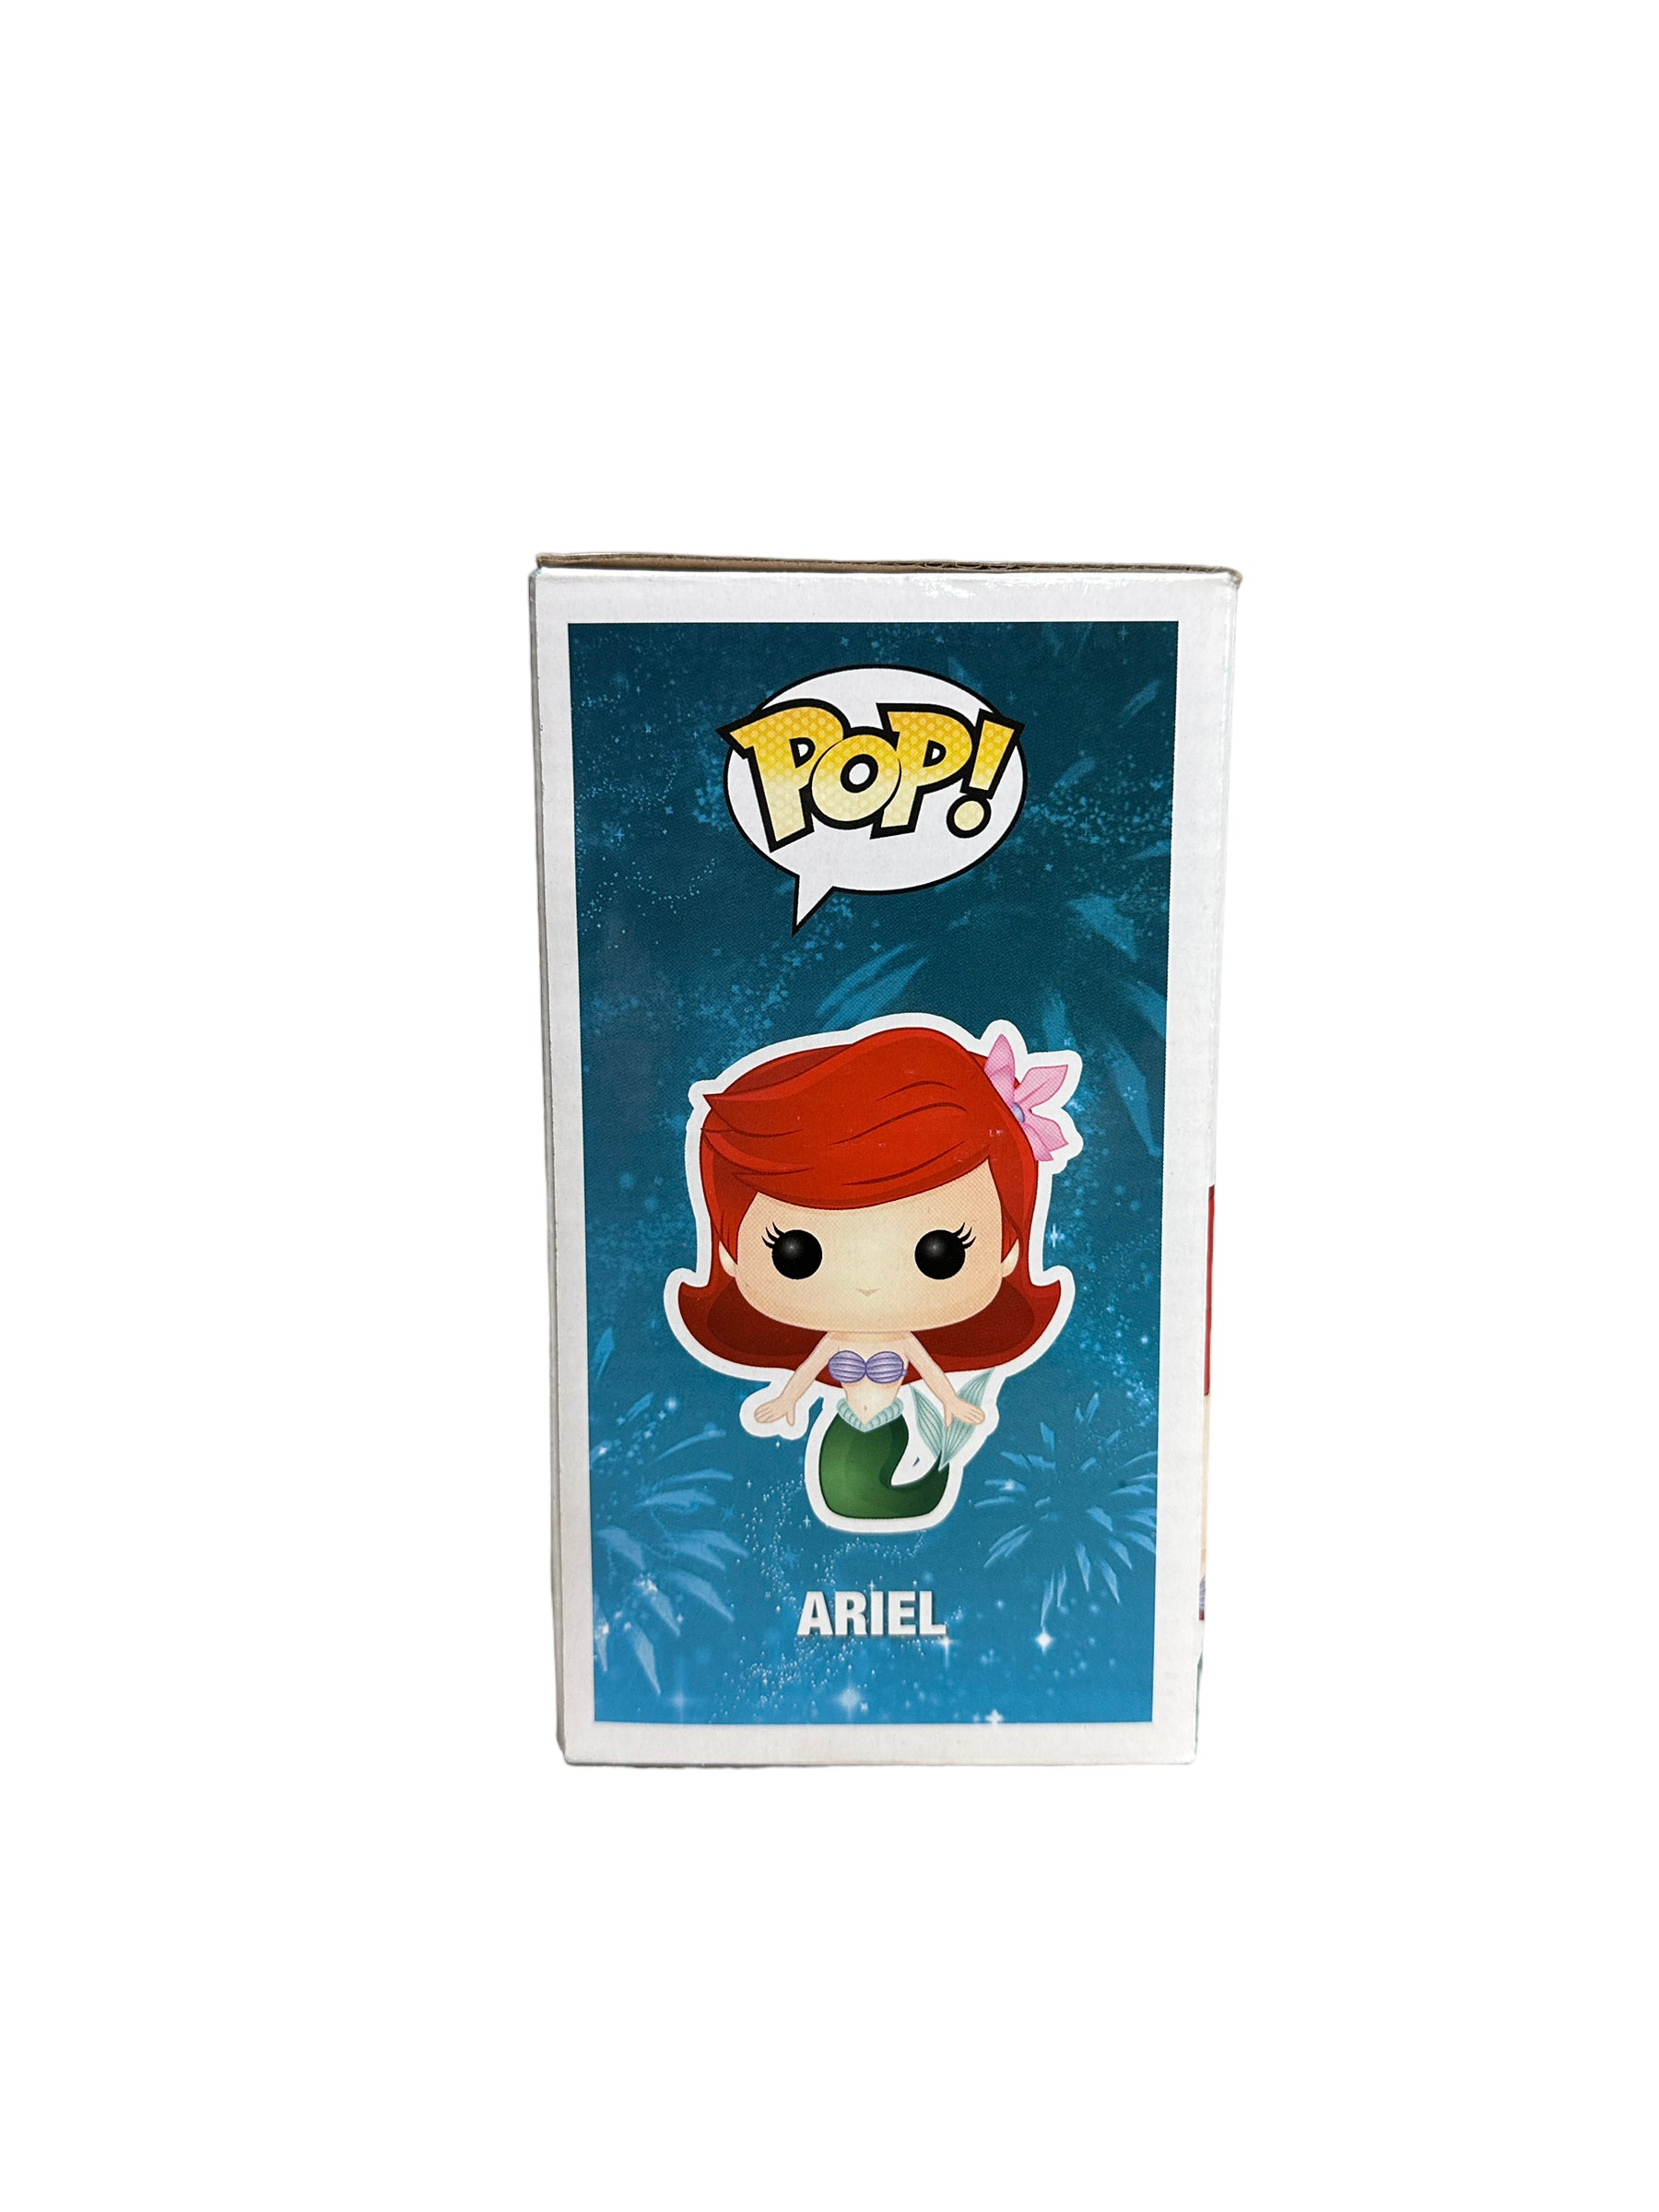 Ariel & Ursula (Metallic) 2 Pack Funko Pop! - Disney - SDCC 2013 Exclusive LE480 Pcs - Condition 7/10